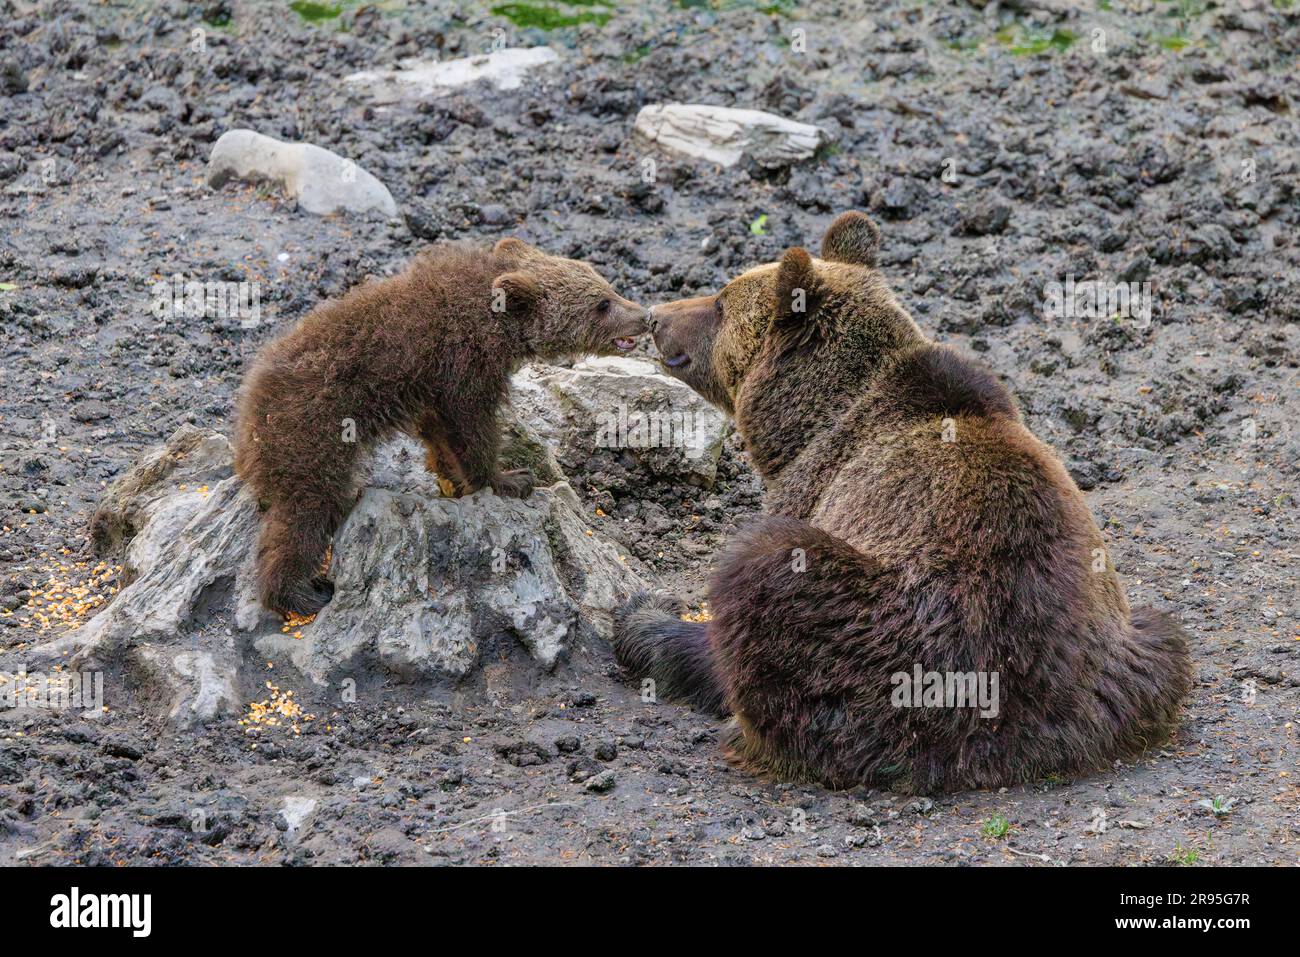 photo touchante d'ours bruns européens dans la nature une mère et un cub se frottant le nez lors d'un tour d'observation des ours en slovénie Banque D'Images